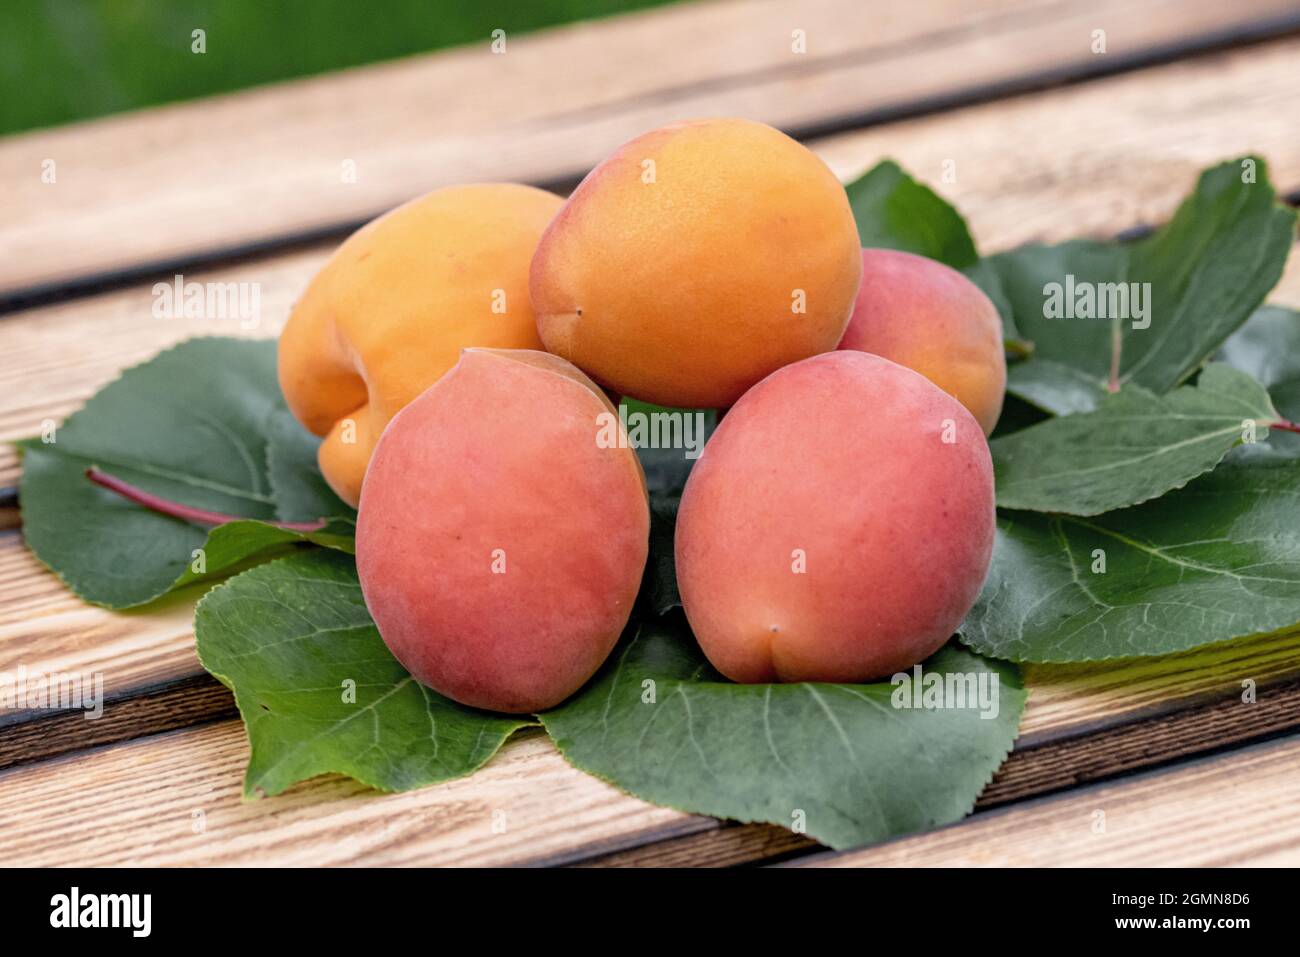 Aprikosenbaum (Prunus armeniaca 'Farbaly', Prunus armeniaca Farbaly), Aprikosen der Sorte Farbaly Stockfoto